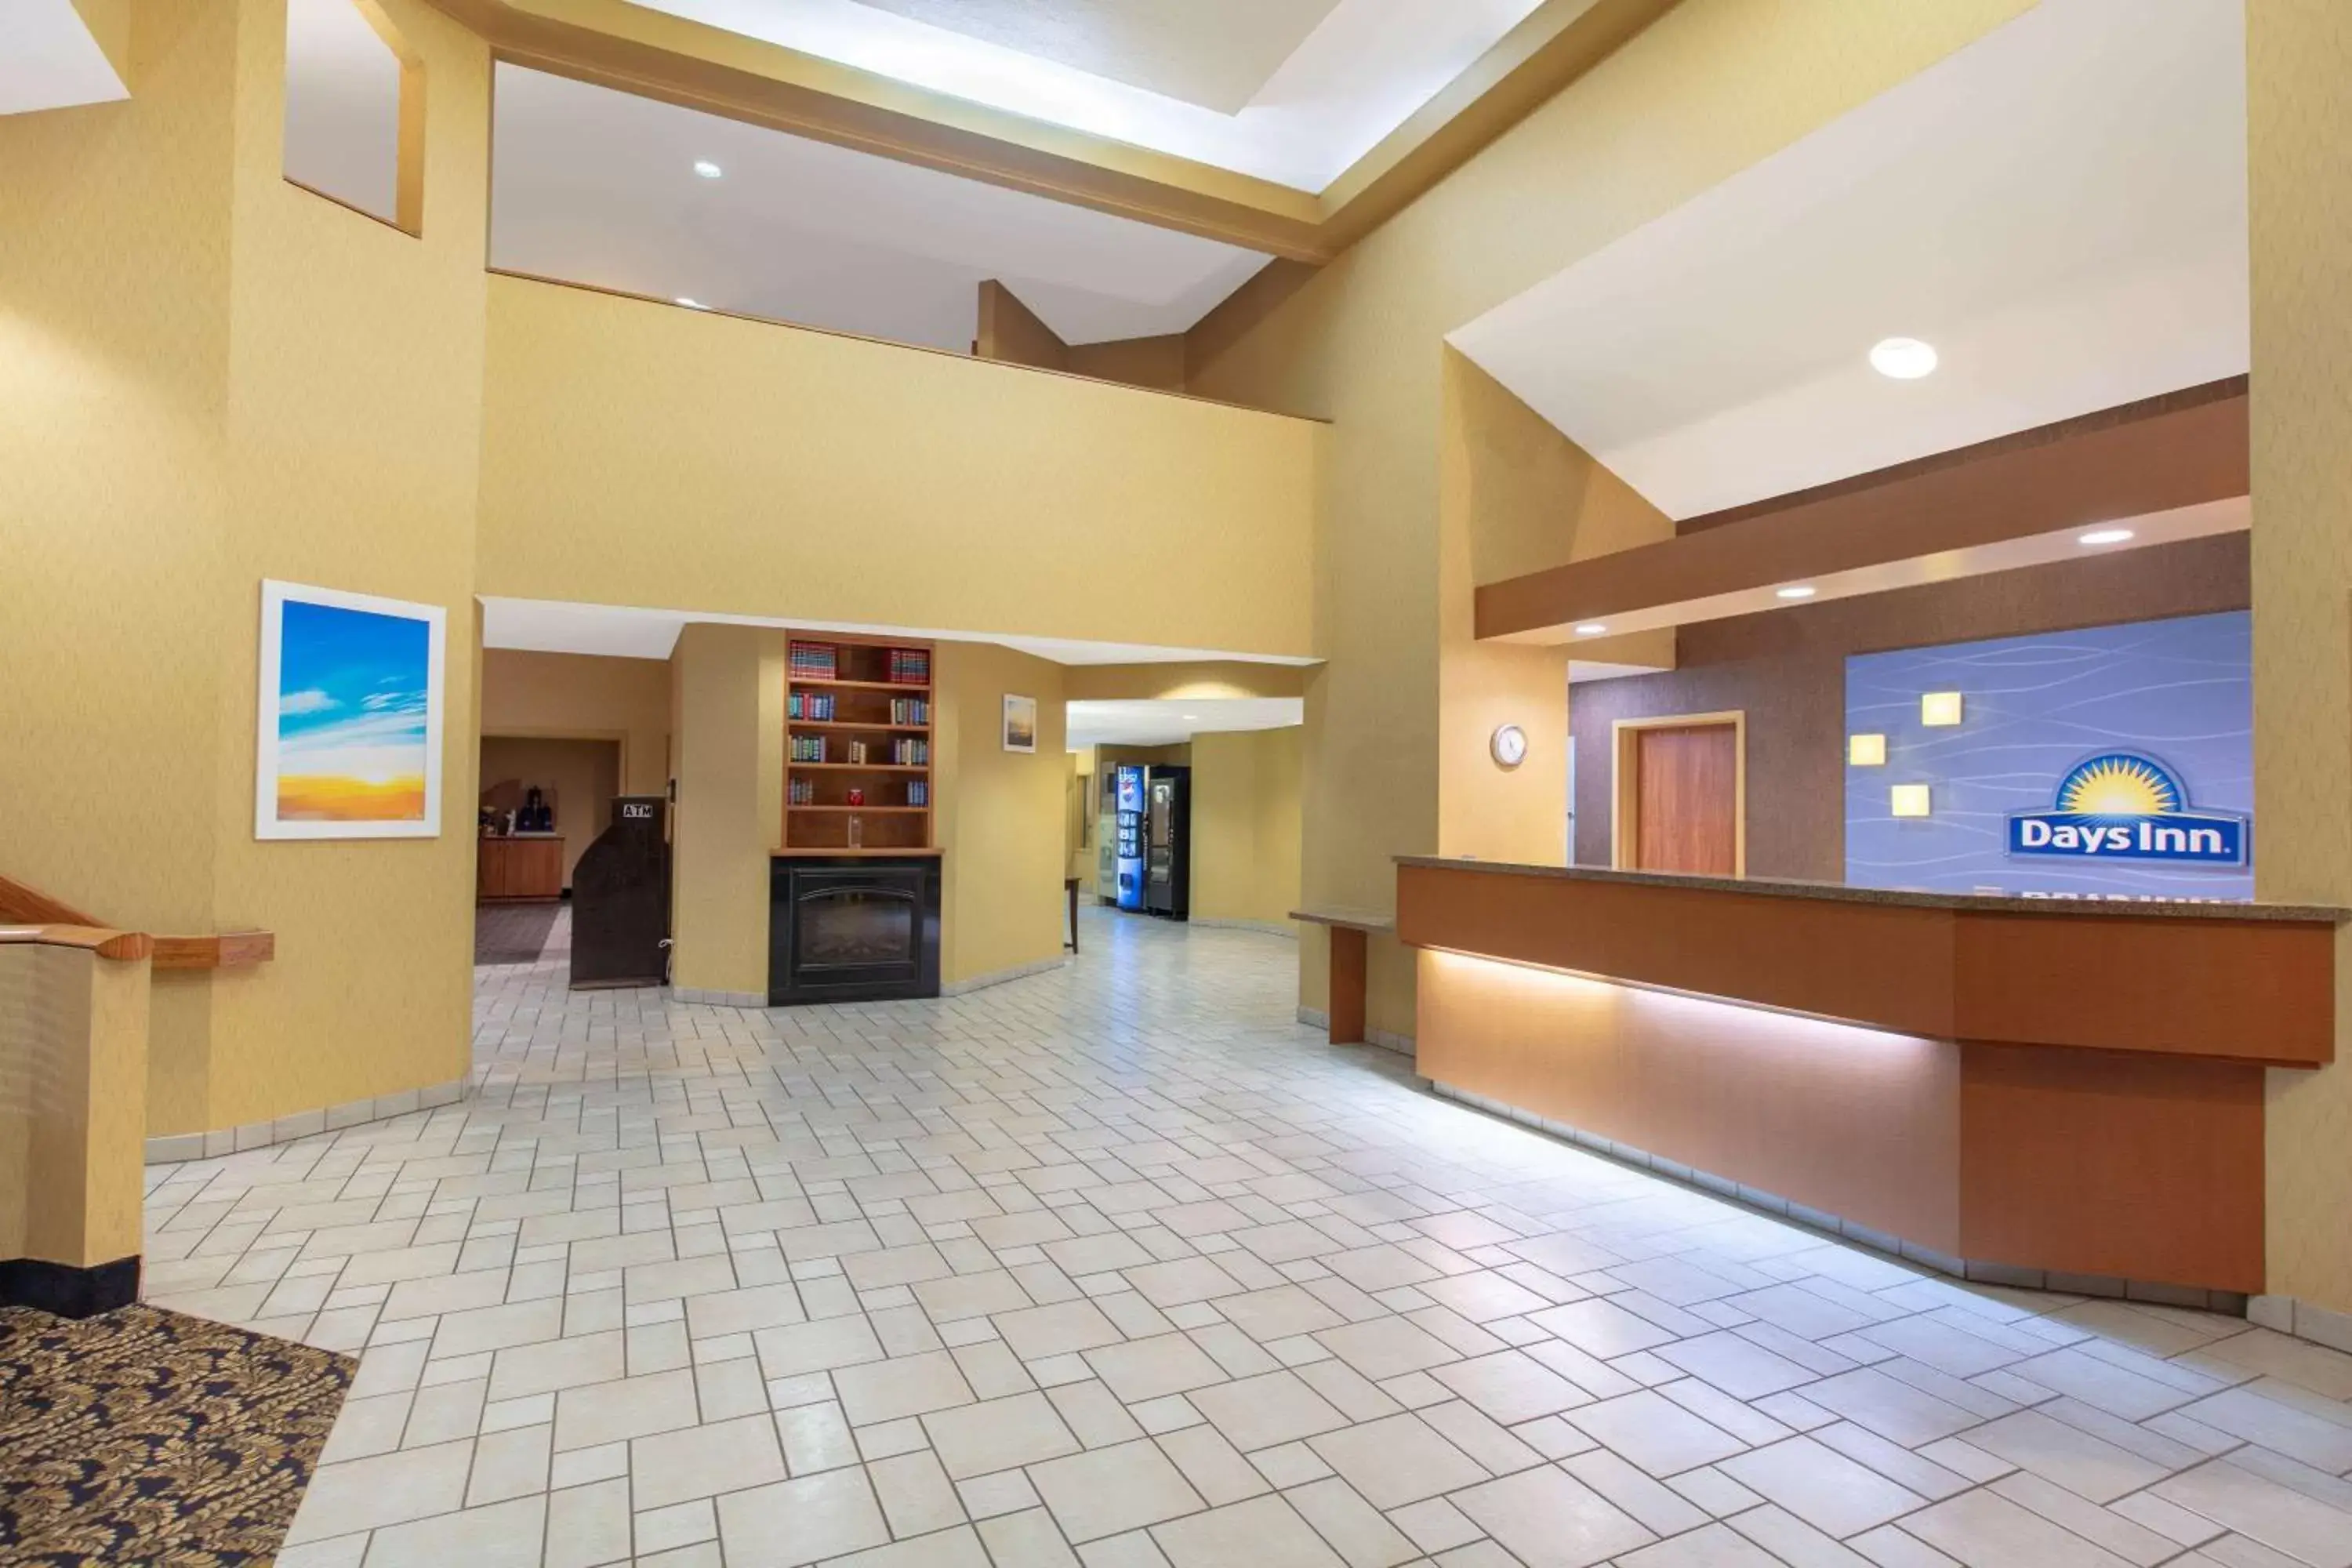 Lobby or reception, Lobby/Reception in Days Inn by Wyndham Tulsa Central